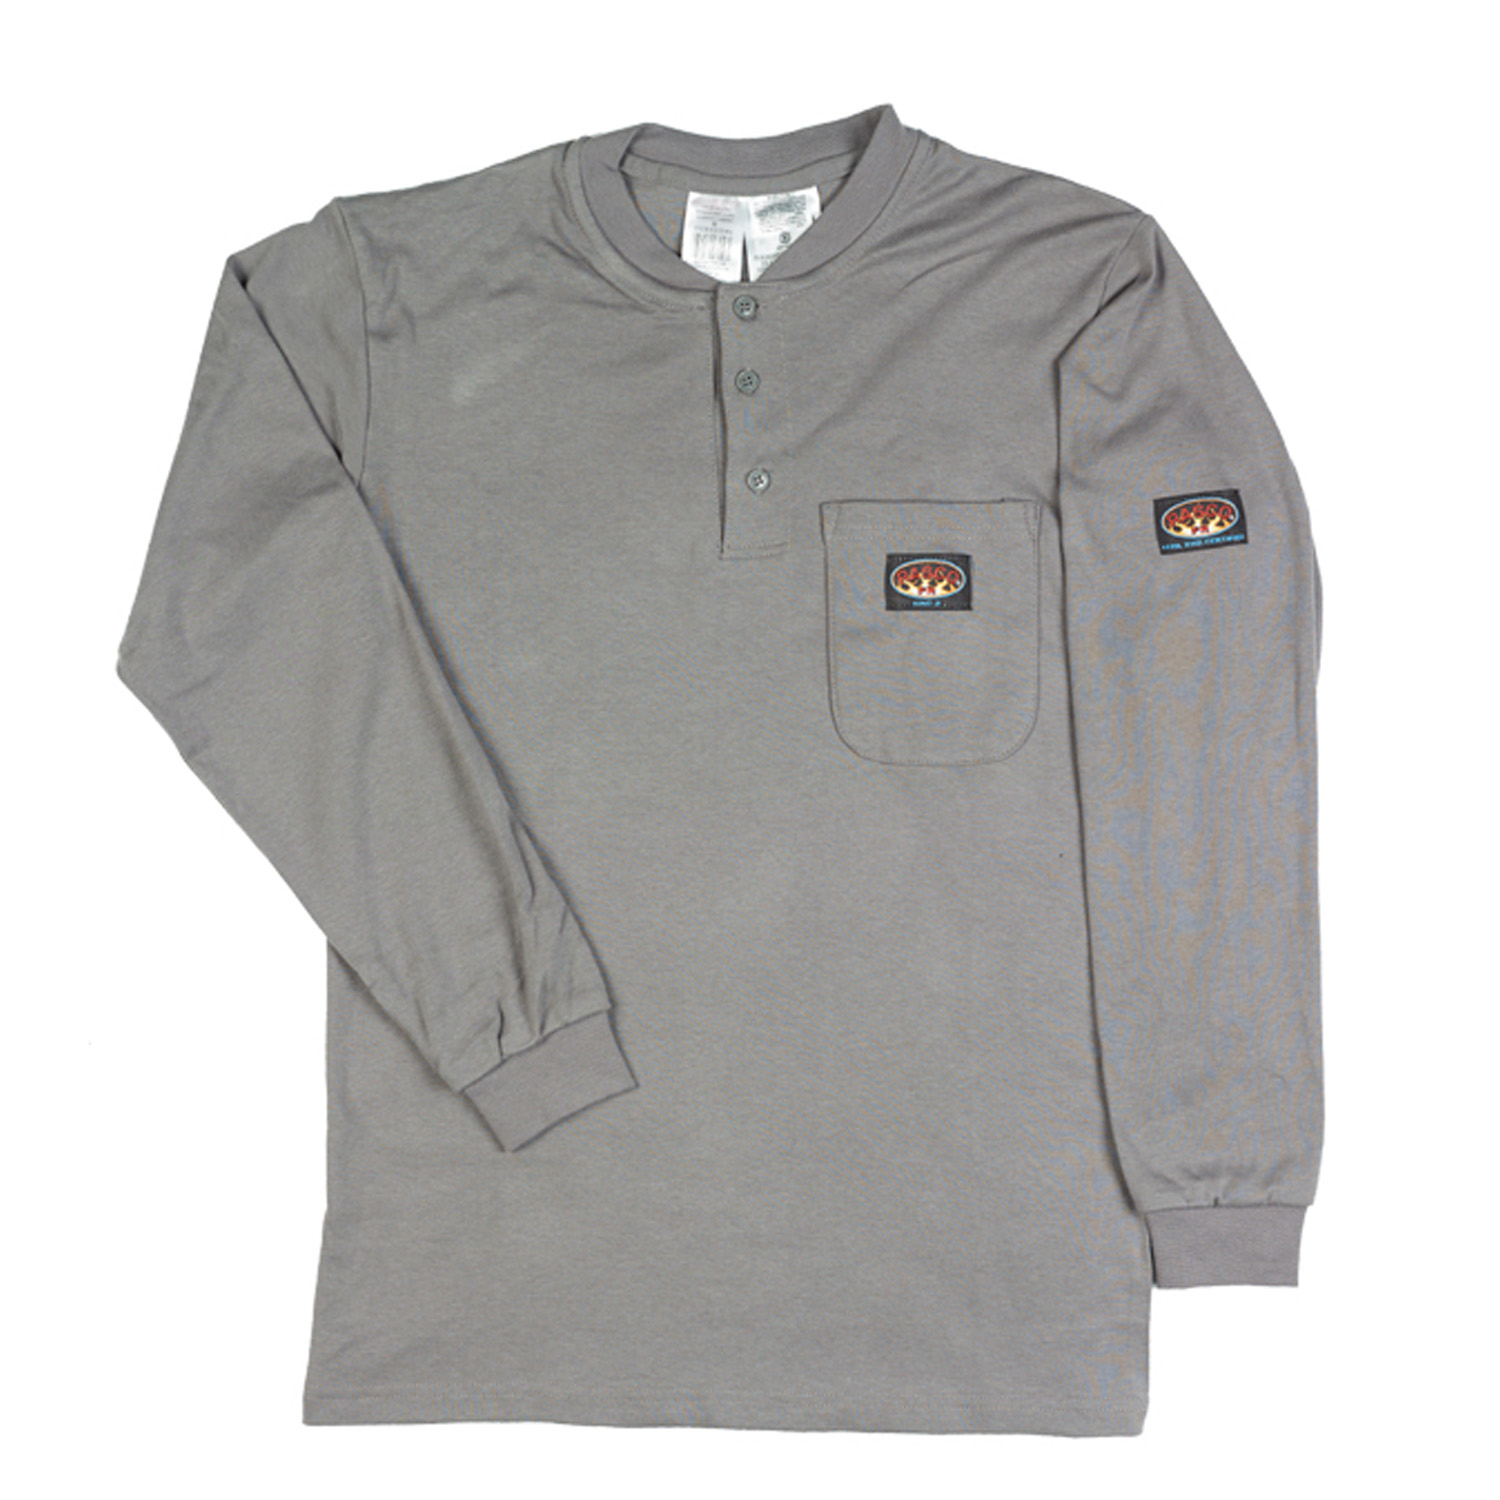 Rasco Fire Resistant Gray Henley T-Shirt [Rasco]